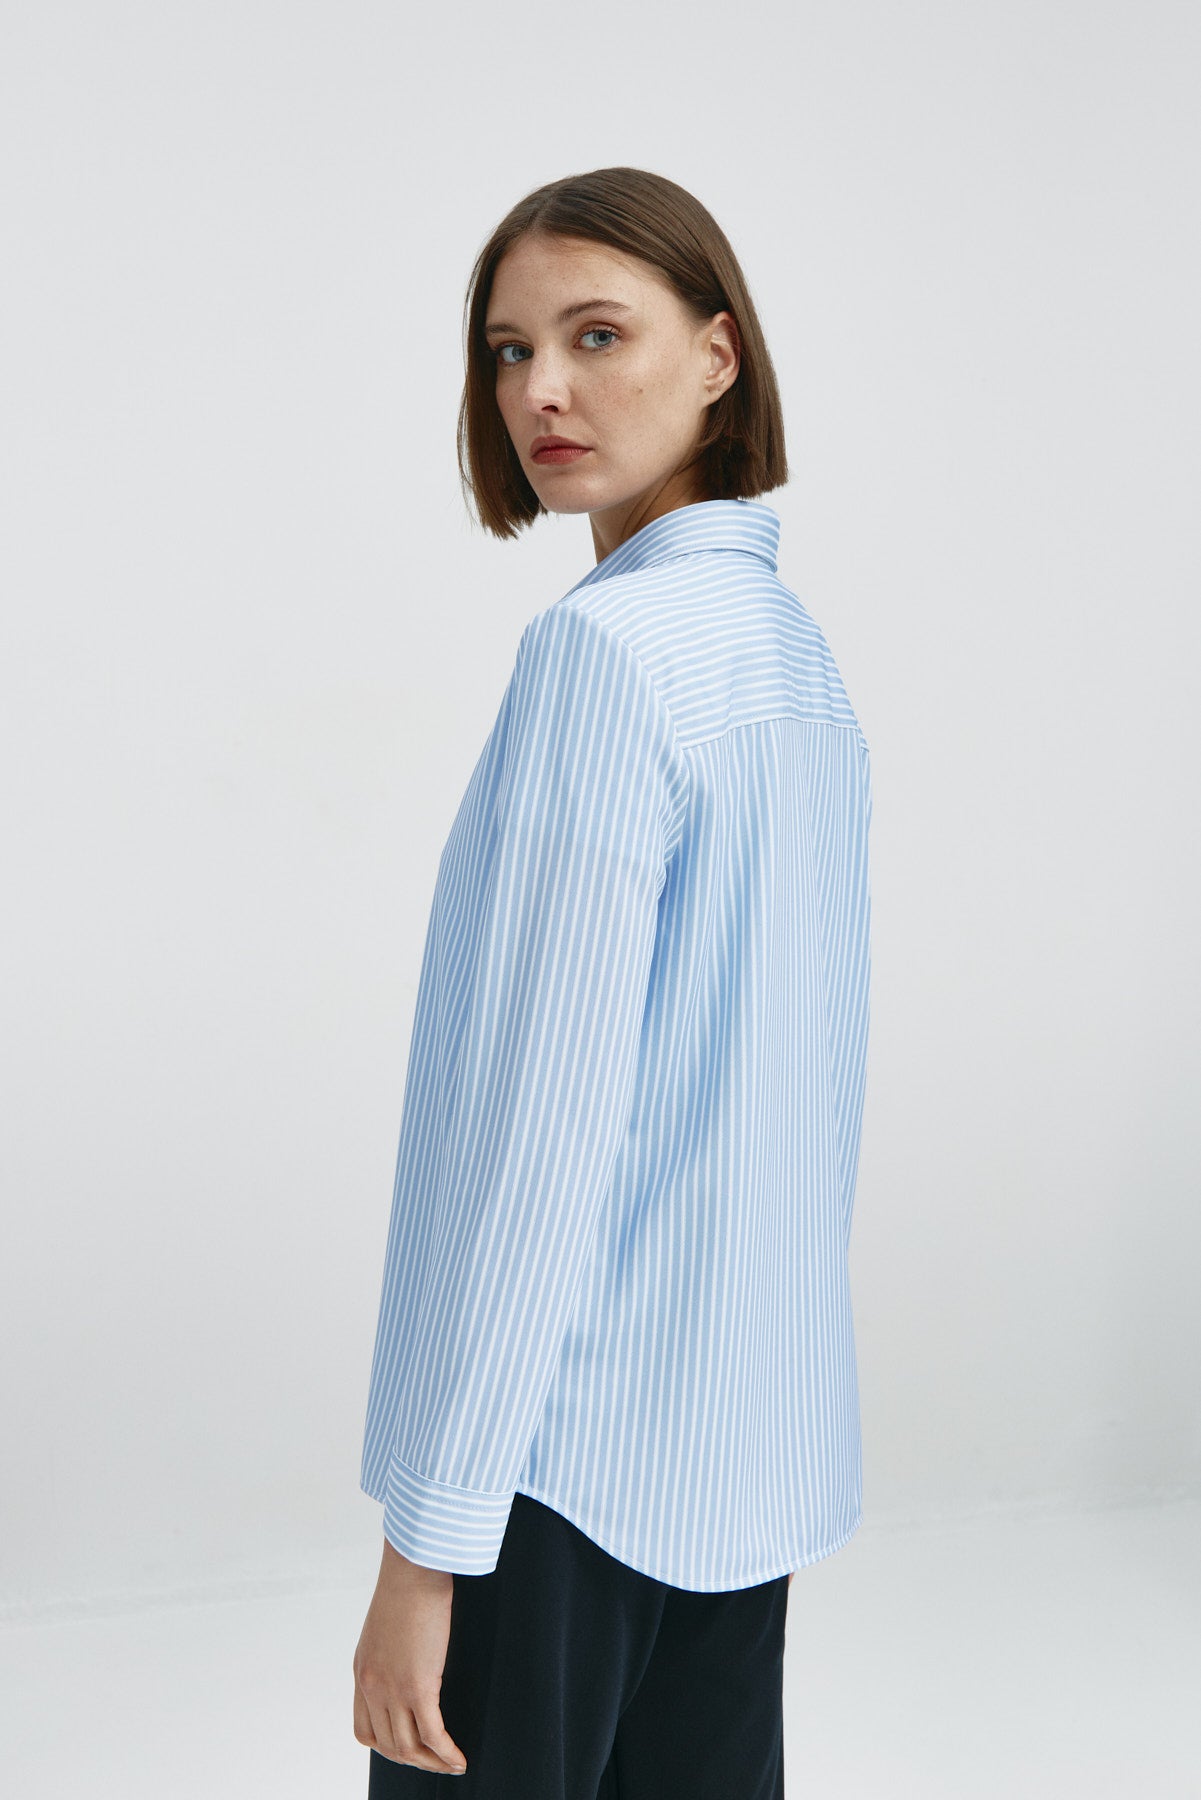 Camisa rayas azules oversize de Sepiia, elegante y resistente a manchas y arrugas. Foto espalda